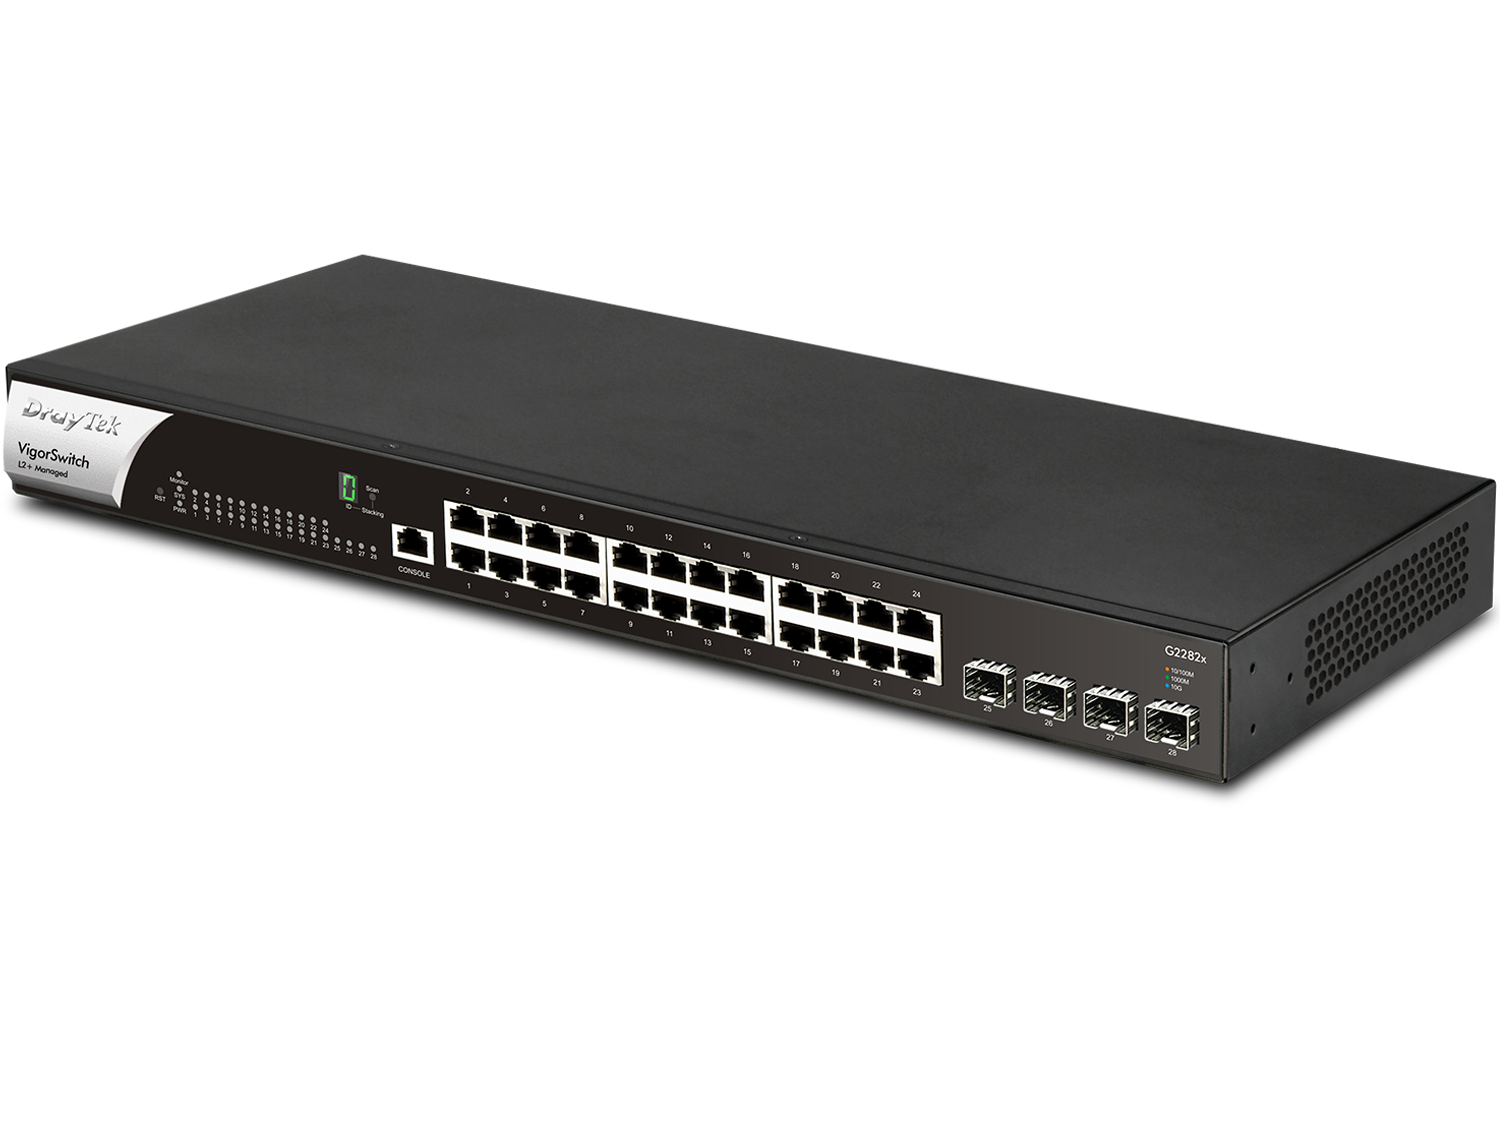 10G uplink 36-port L2+ managed Ethernet fiber switch-Aggregation/Core switch